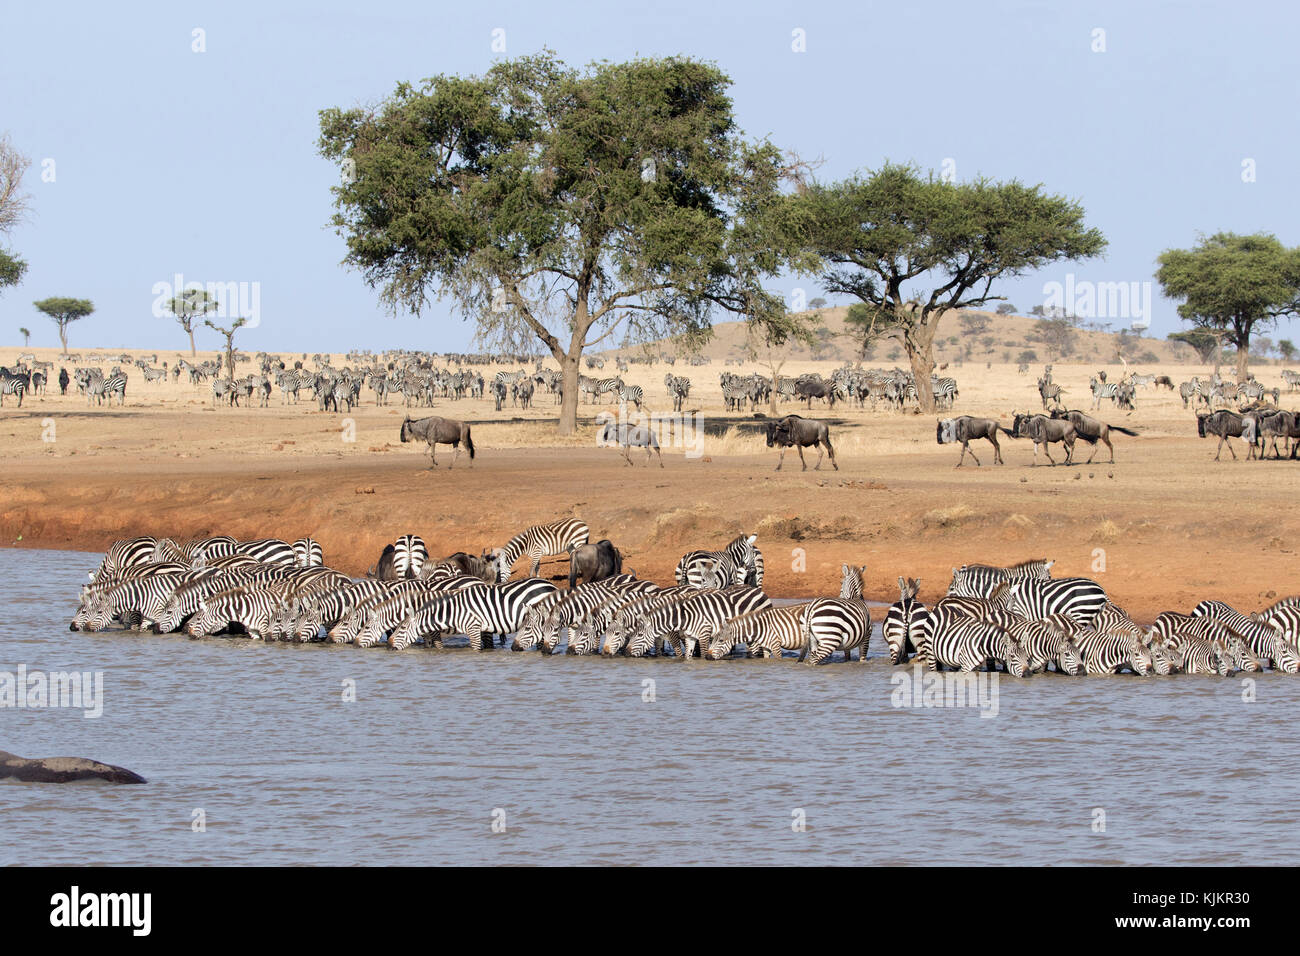 Serengeti National Park. Herd of zebras  (Equus quagga) drinking water. Tanzania. Stock Photo